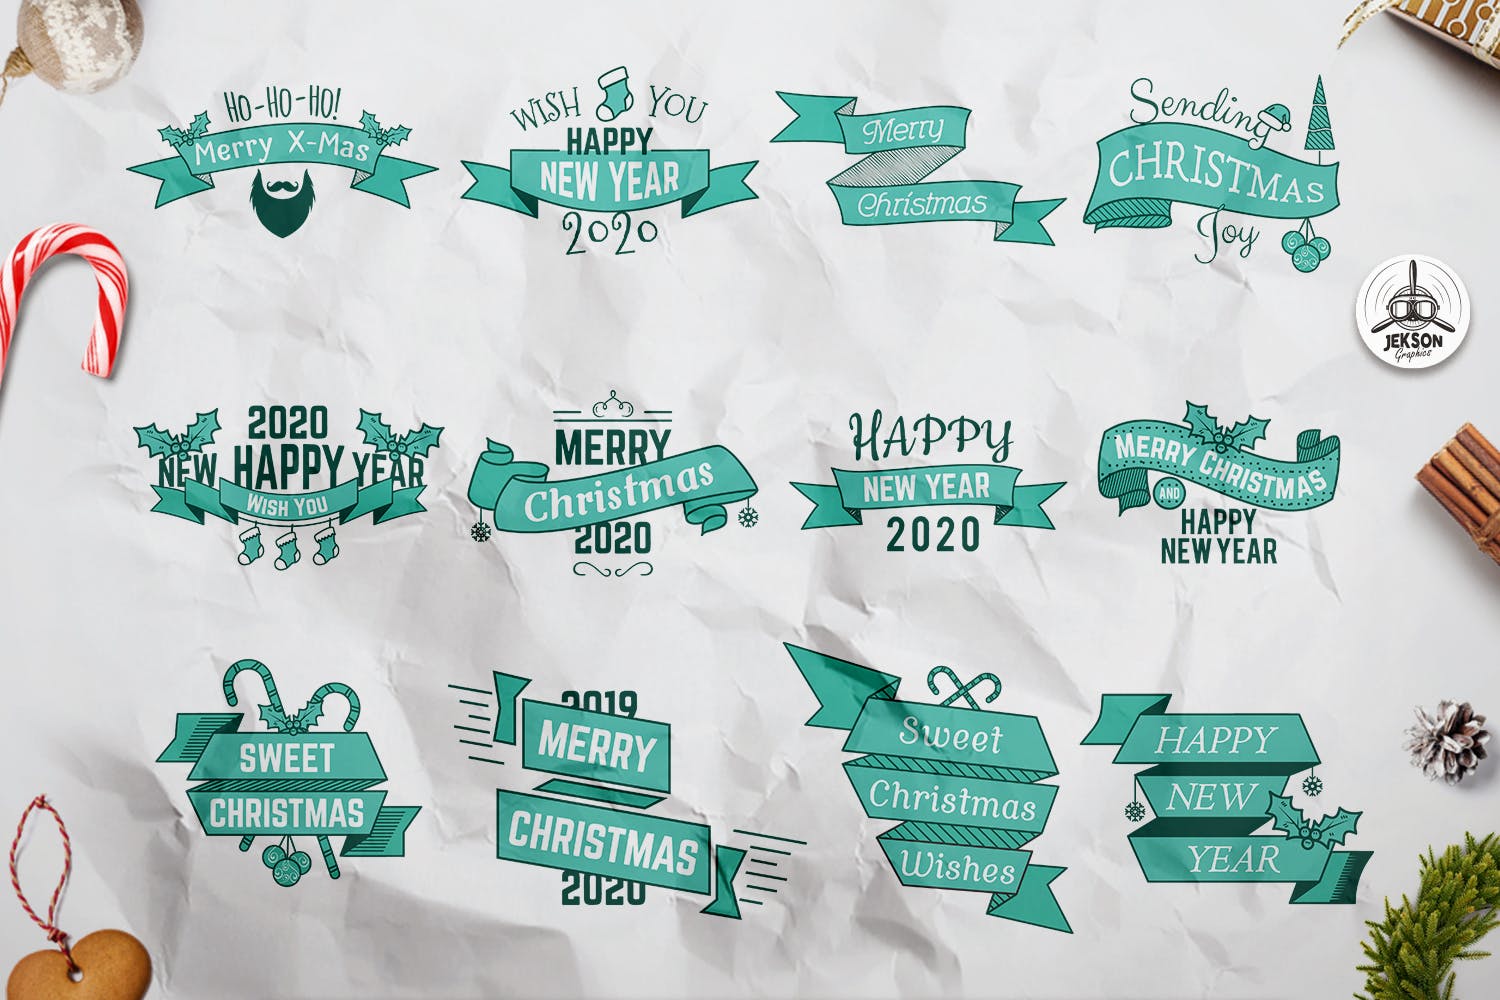 复古圣诞主题Logo/标签/徽章设计模板 Retro Christmas Overlays, New Year Labels & Badges插图(1)